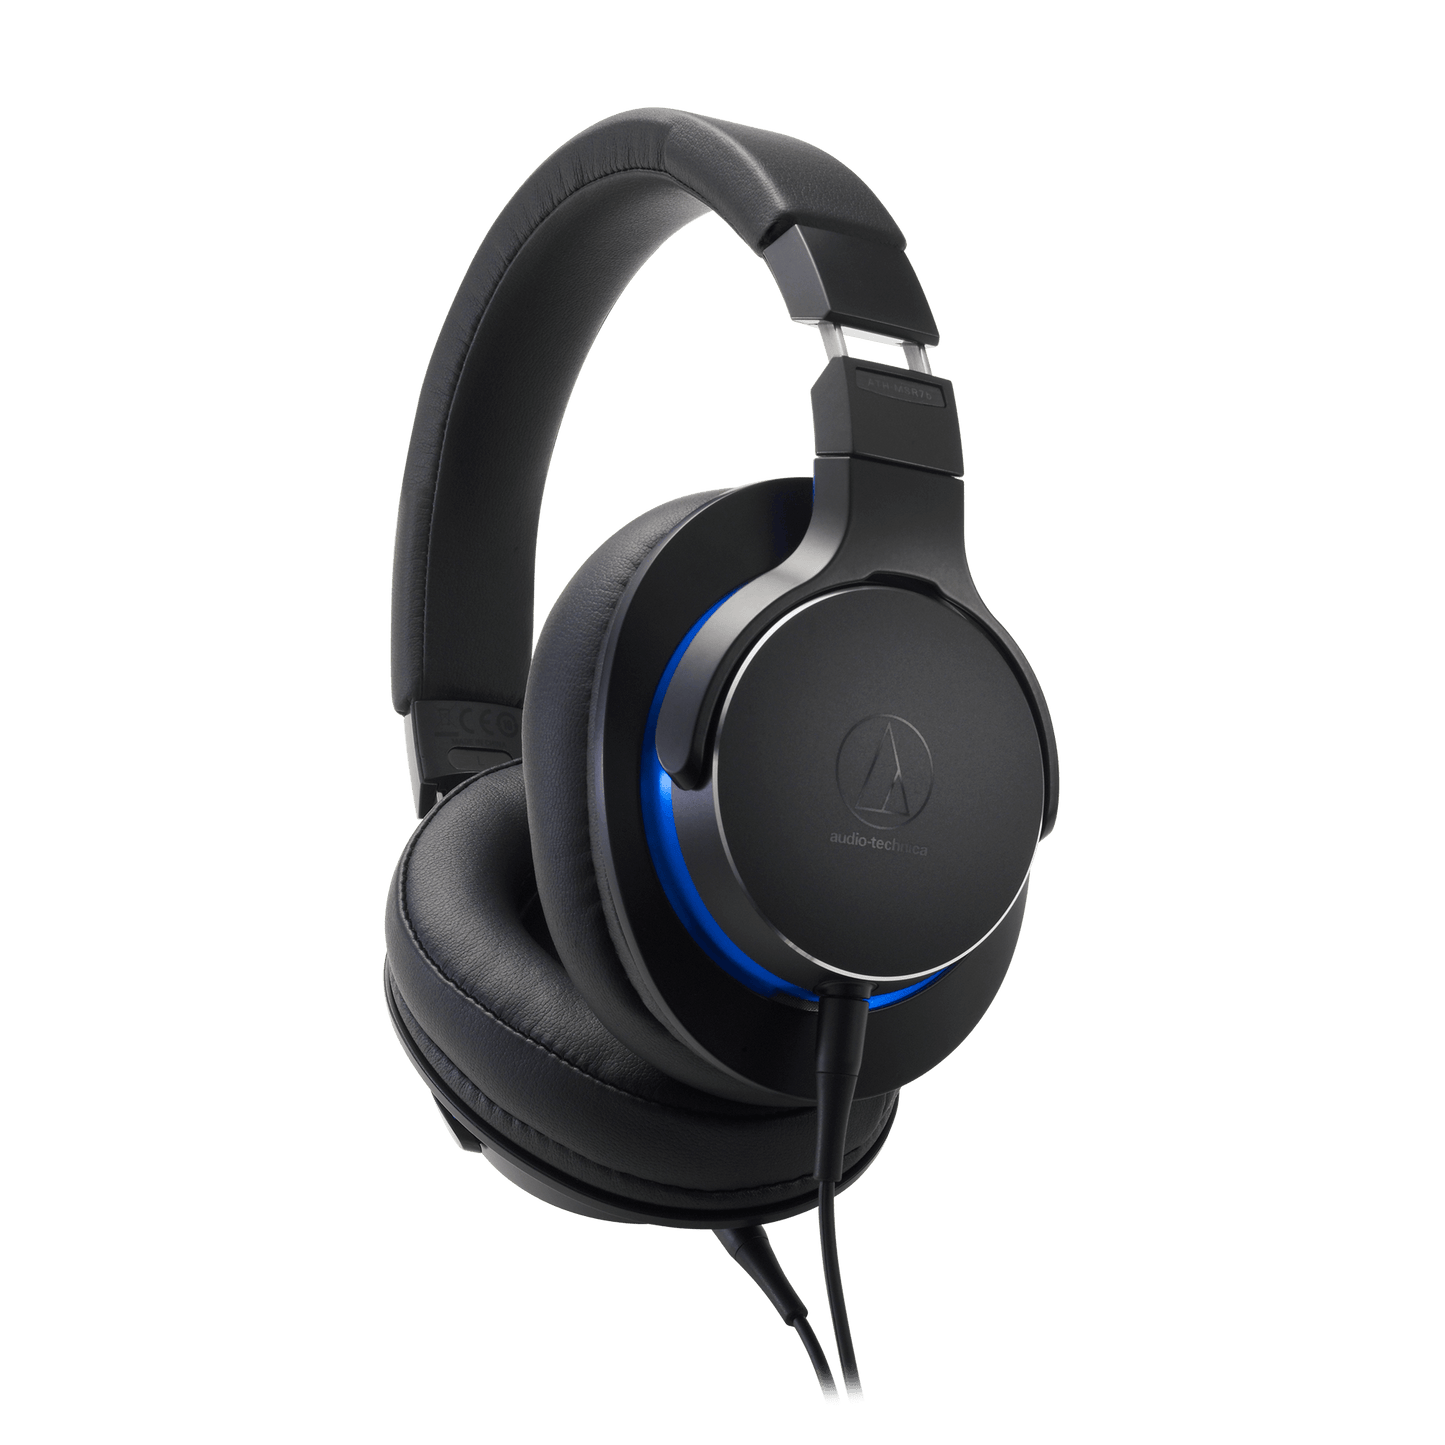 Audio-Technica ATH-MSR7b Hi-Res Over-Ear Headphones